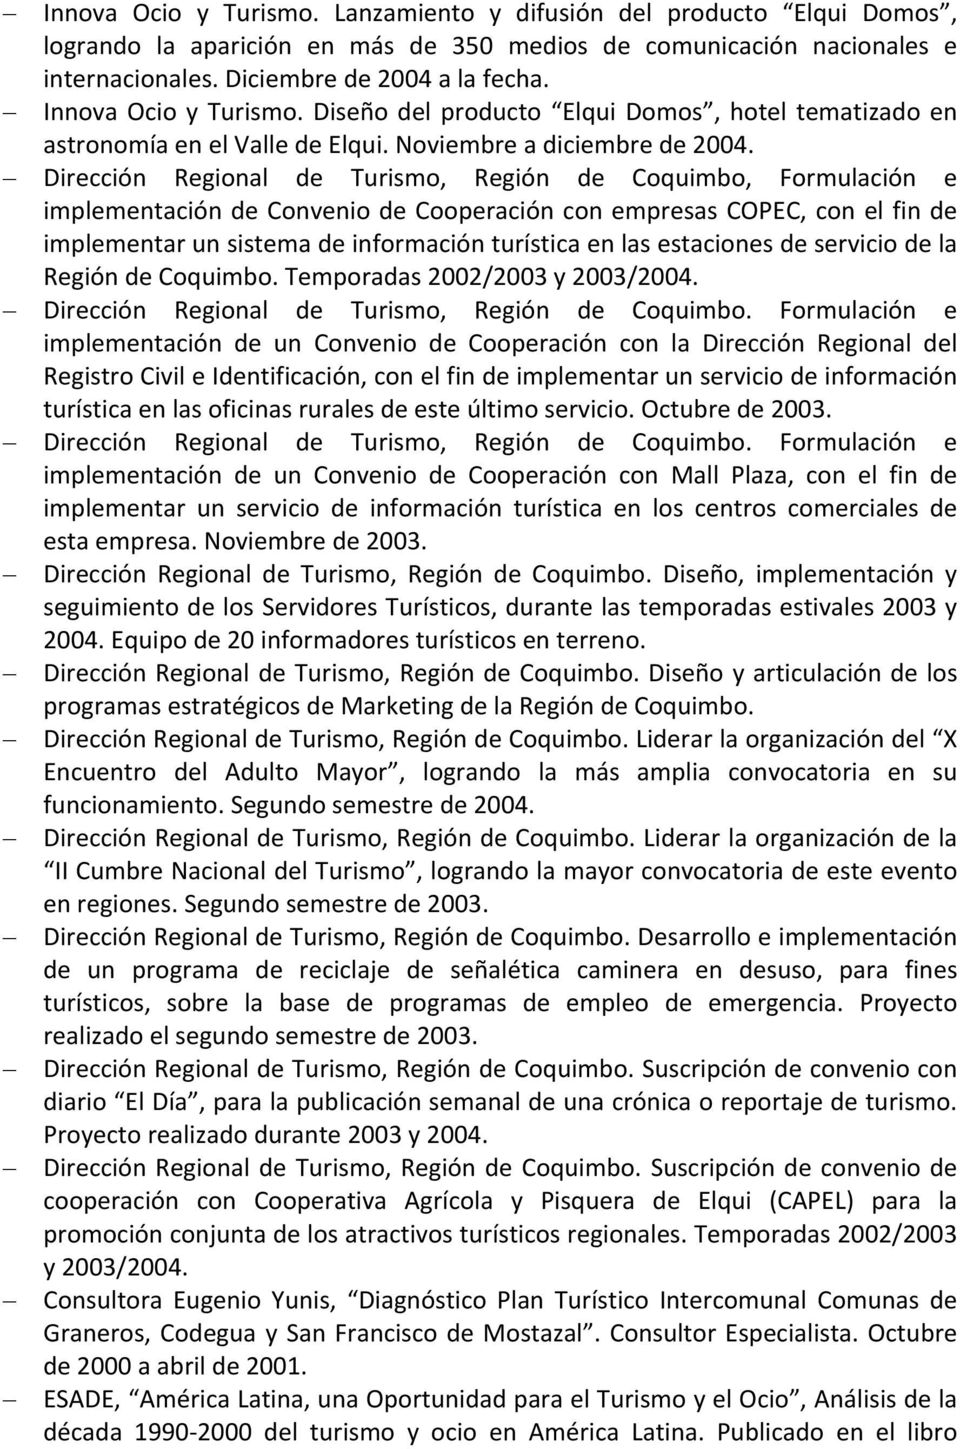 Dirección Regional de Turismo, Región de Coquimbo, Formulación e implementación de Convenio de Cooperación con empresas COPEC, con el fin de implementar un sistema de información turística en las